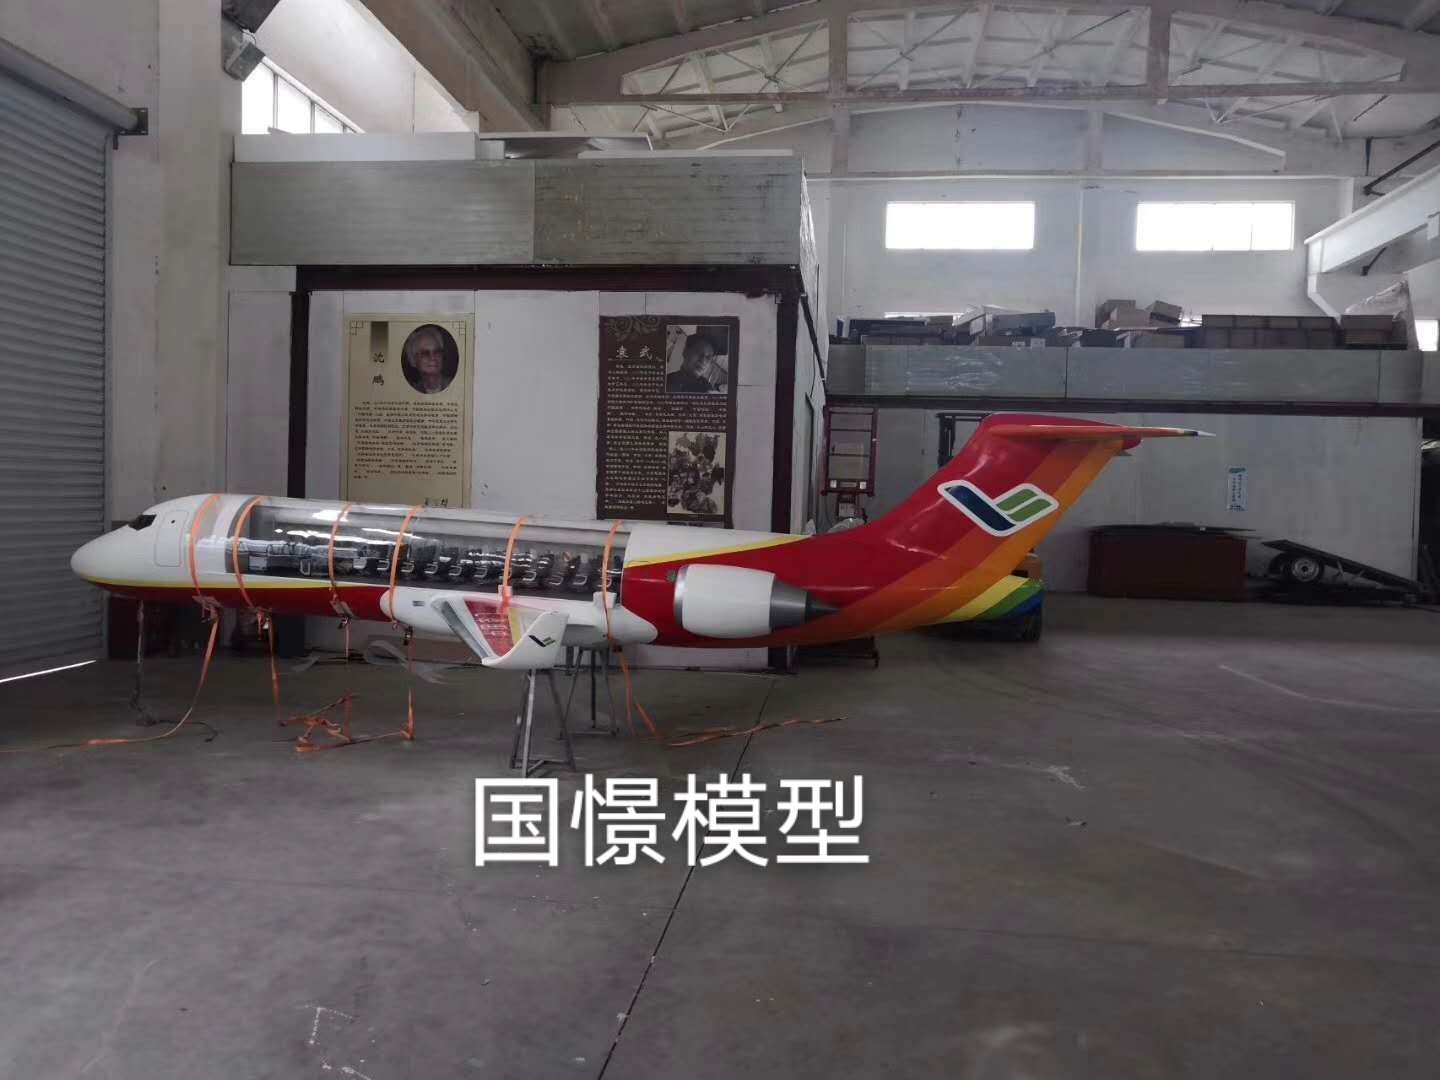 尤溪县飞机模型